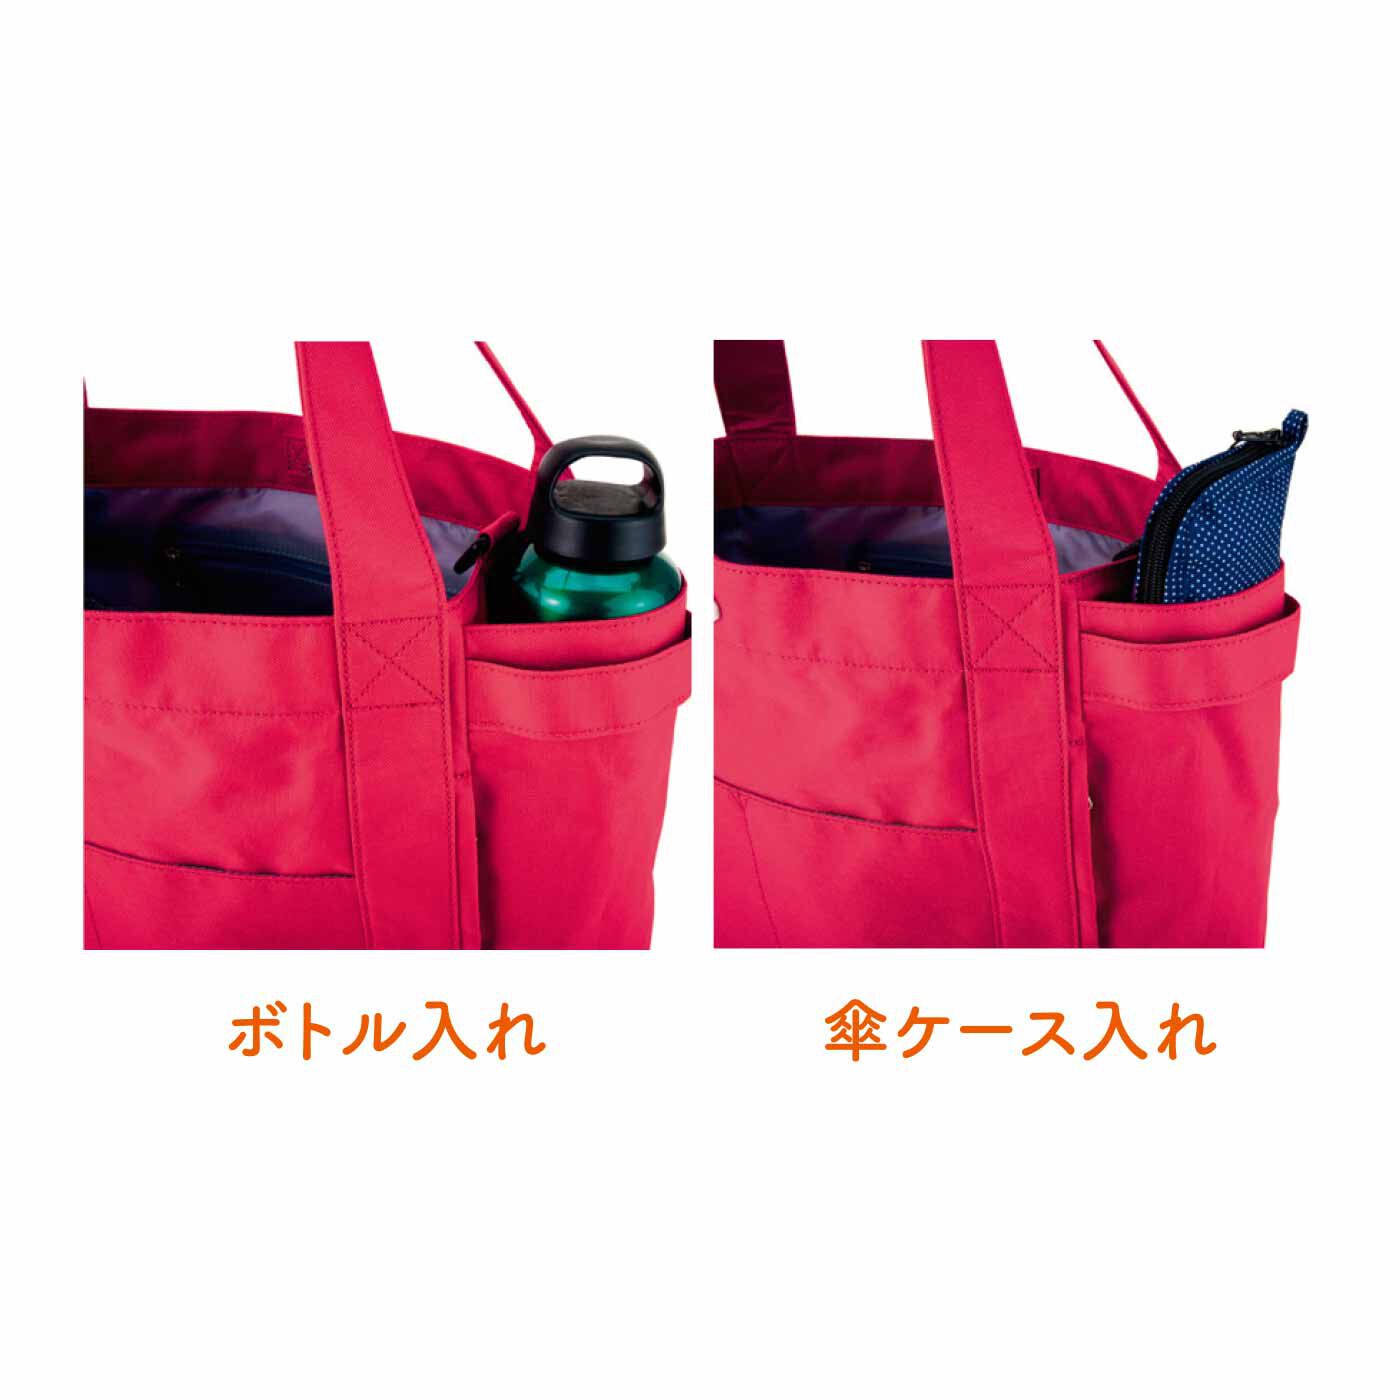 FELISSIMO PARTNERS|ルートート シンプル使いやすい工夫がいっぱいのトートバッグ|両サイドにはペットボトルや水筒、折りたたみ傘を入れるポケット。バッグを開けずに出し入れできます。